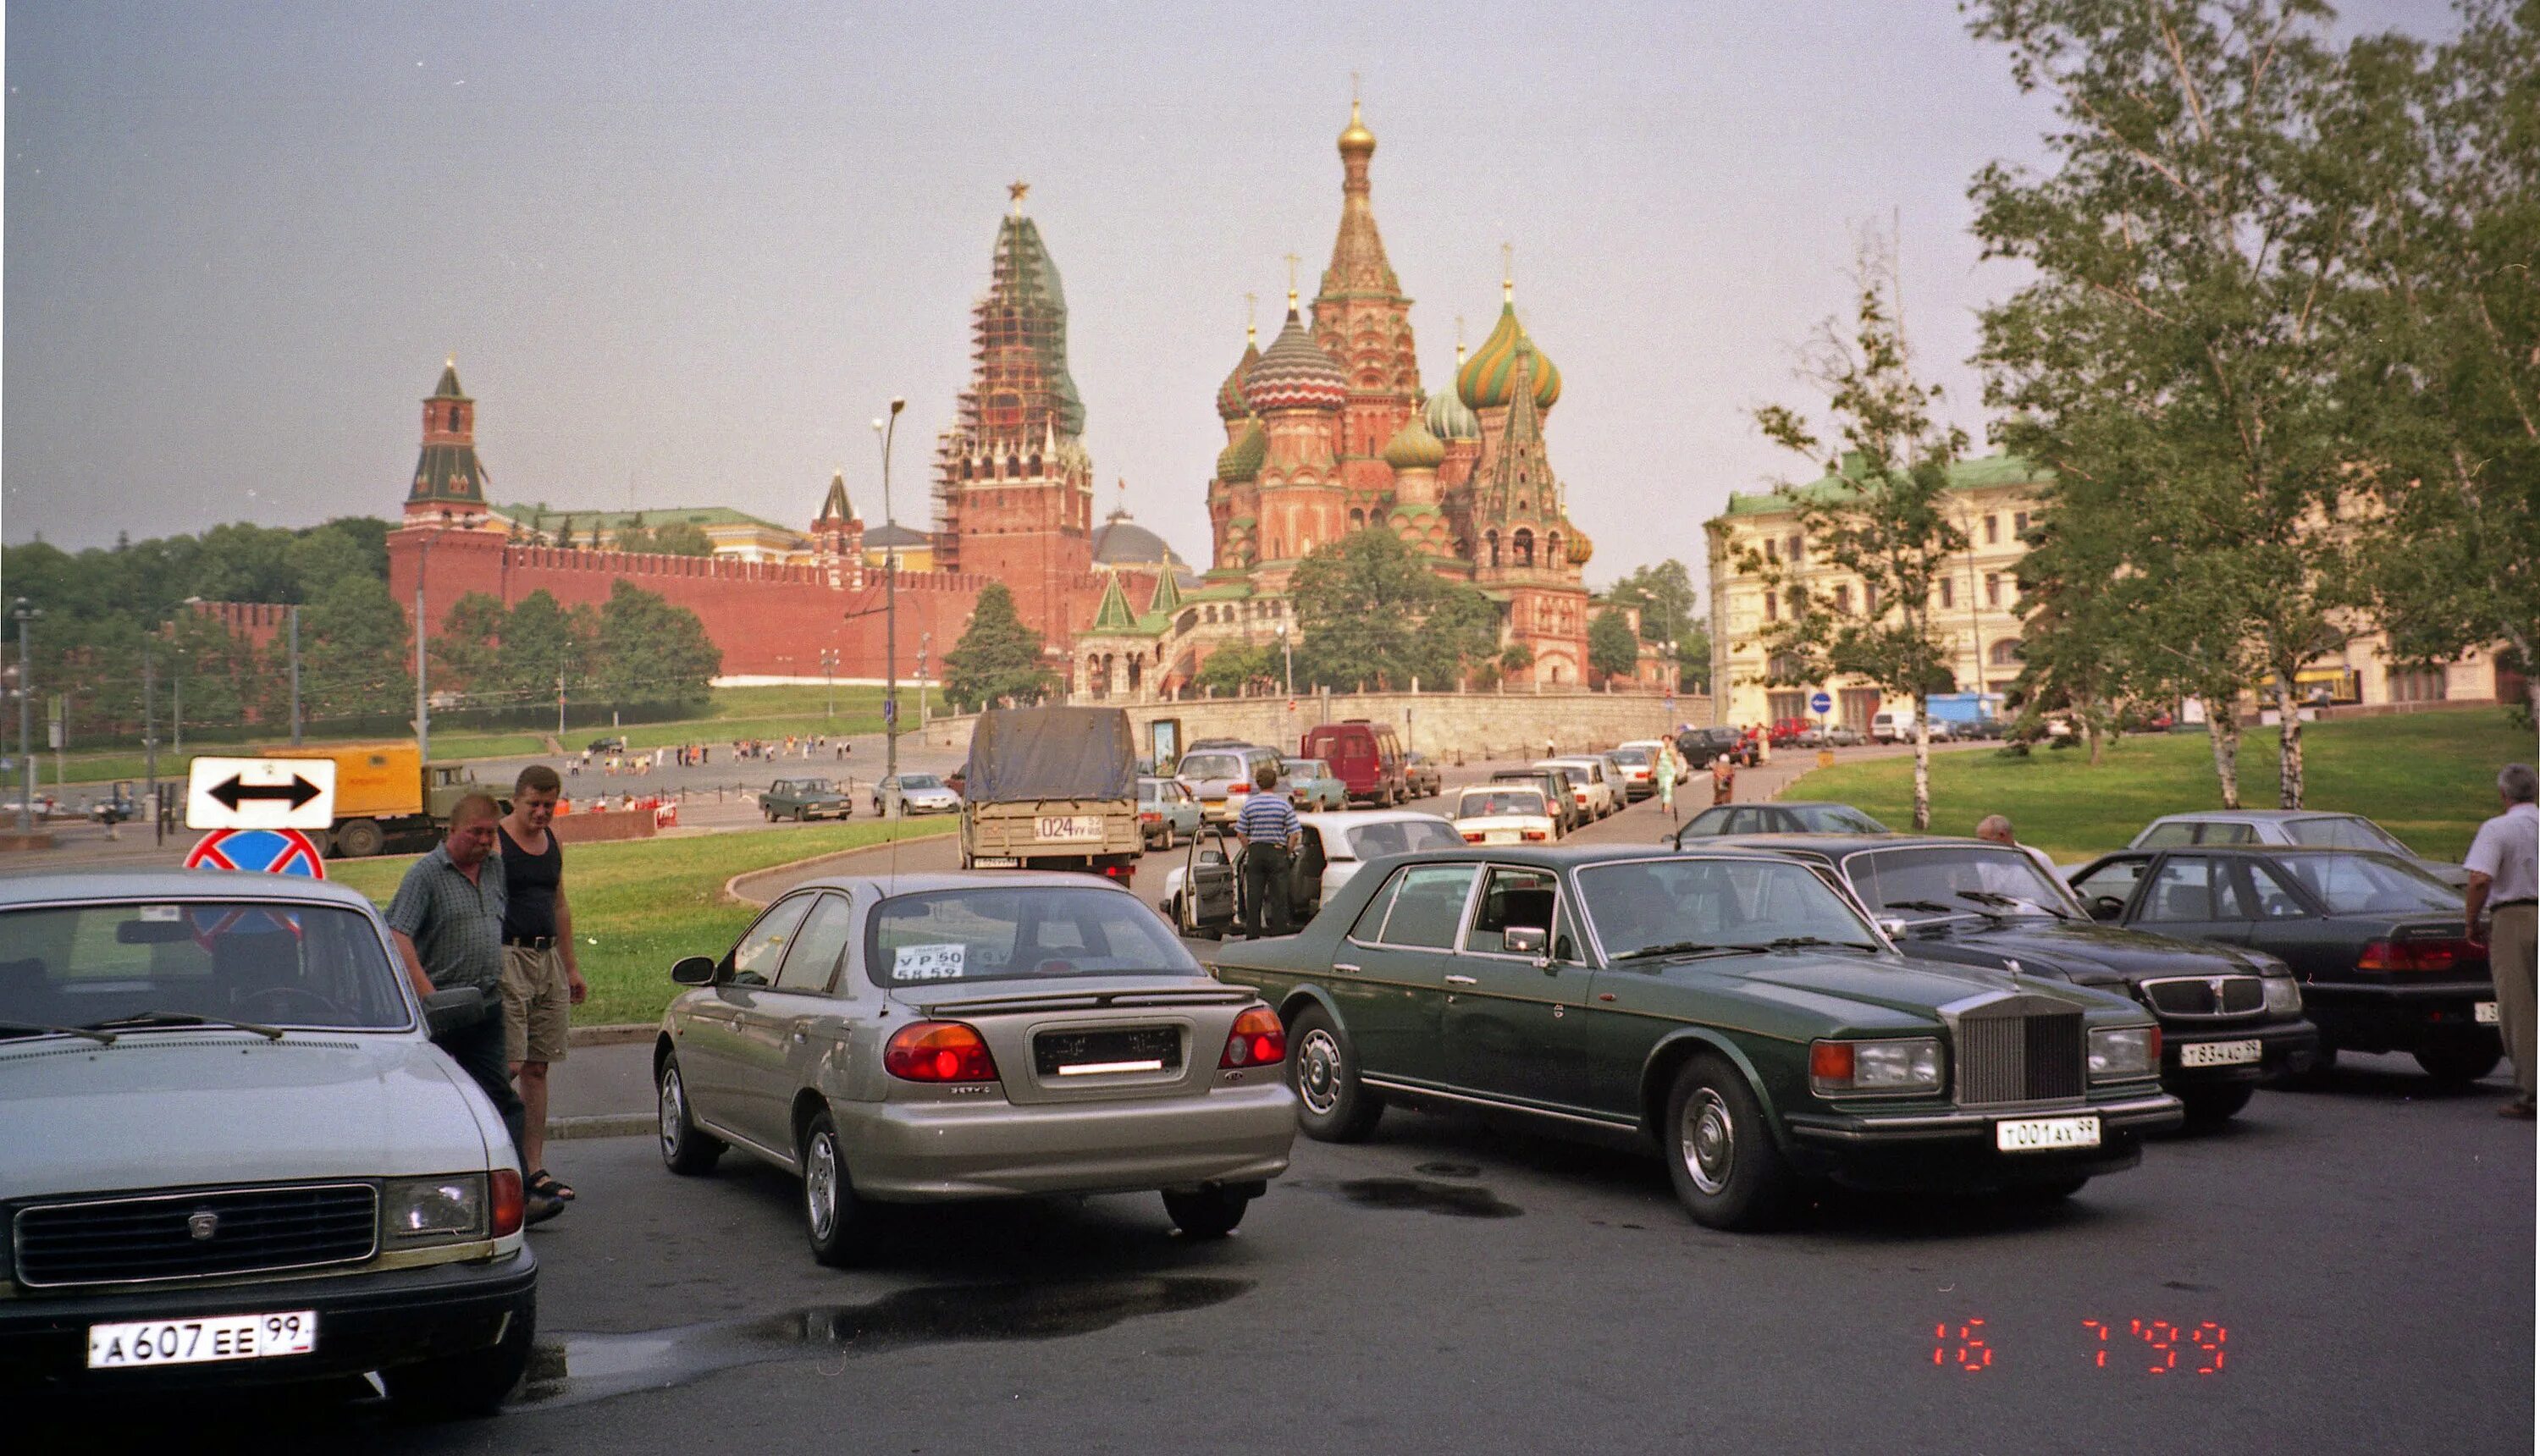 Obshhestvo s ogranichenn. Москва 1999 год. Москва 2000. Москва в 2000-е. Москва 2000 год.